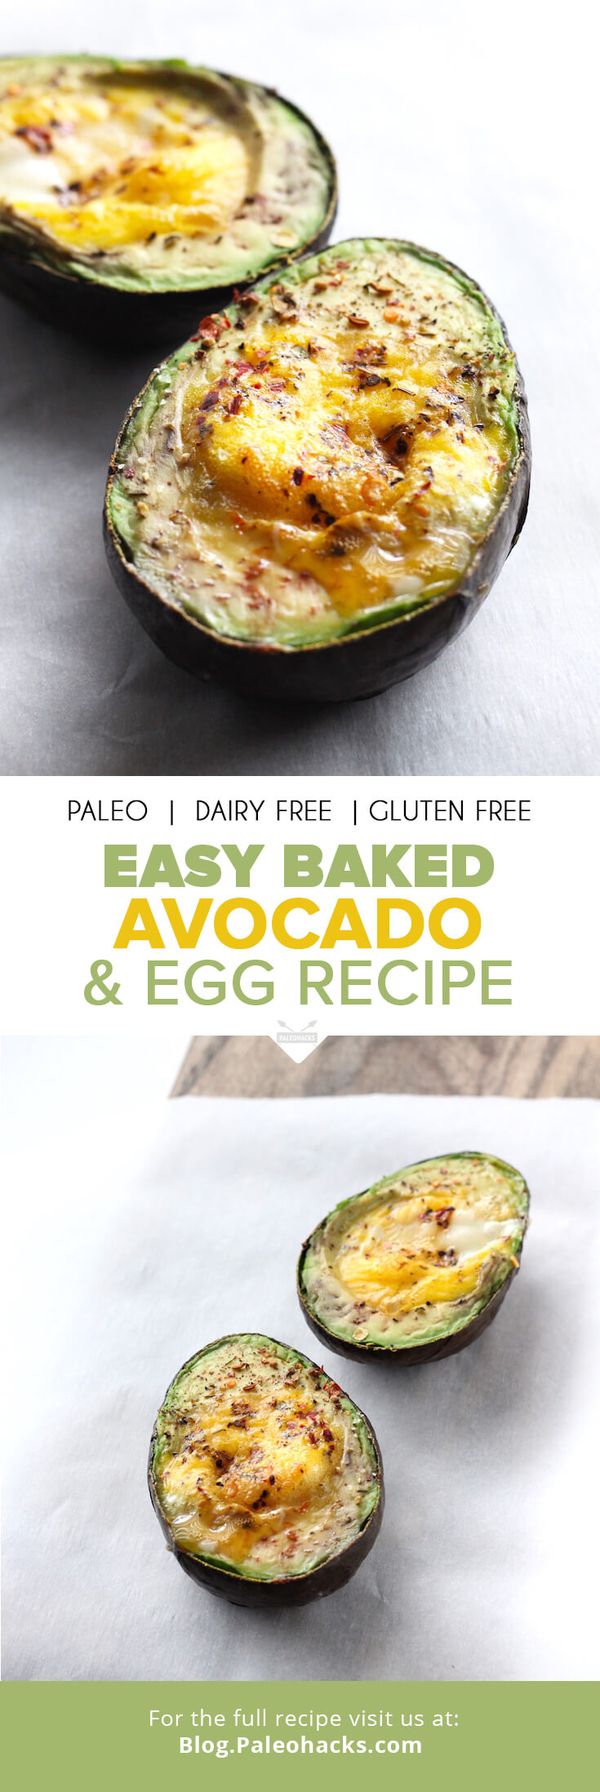 Easy Baked Avocado and Egg Recipe by Diana Keuilian